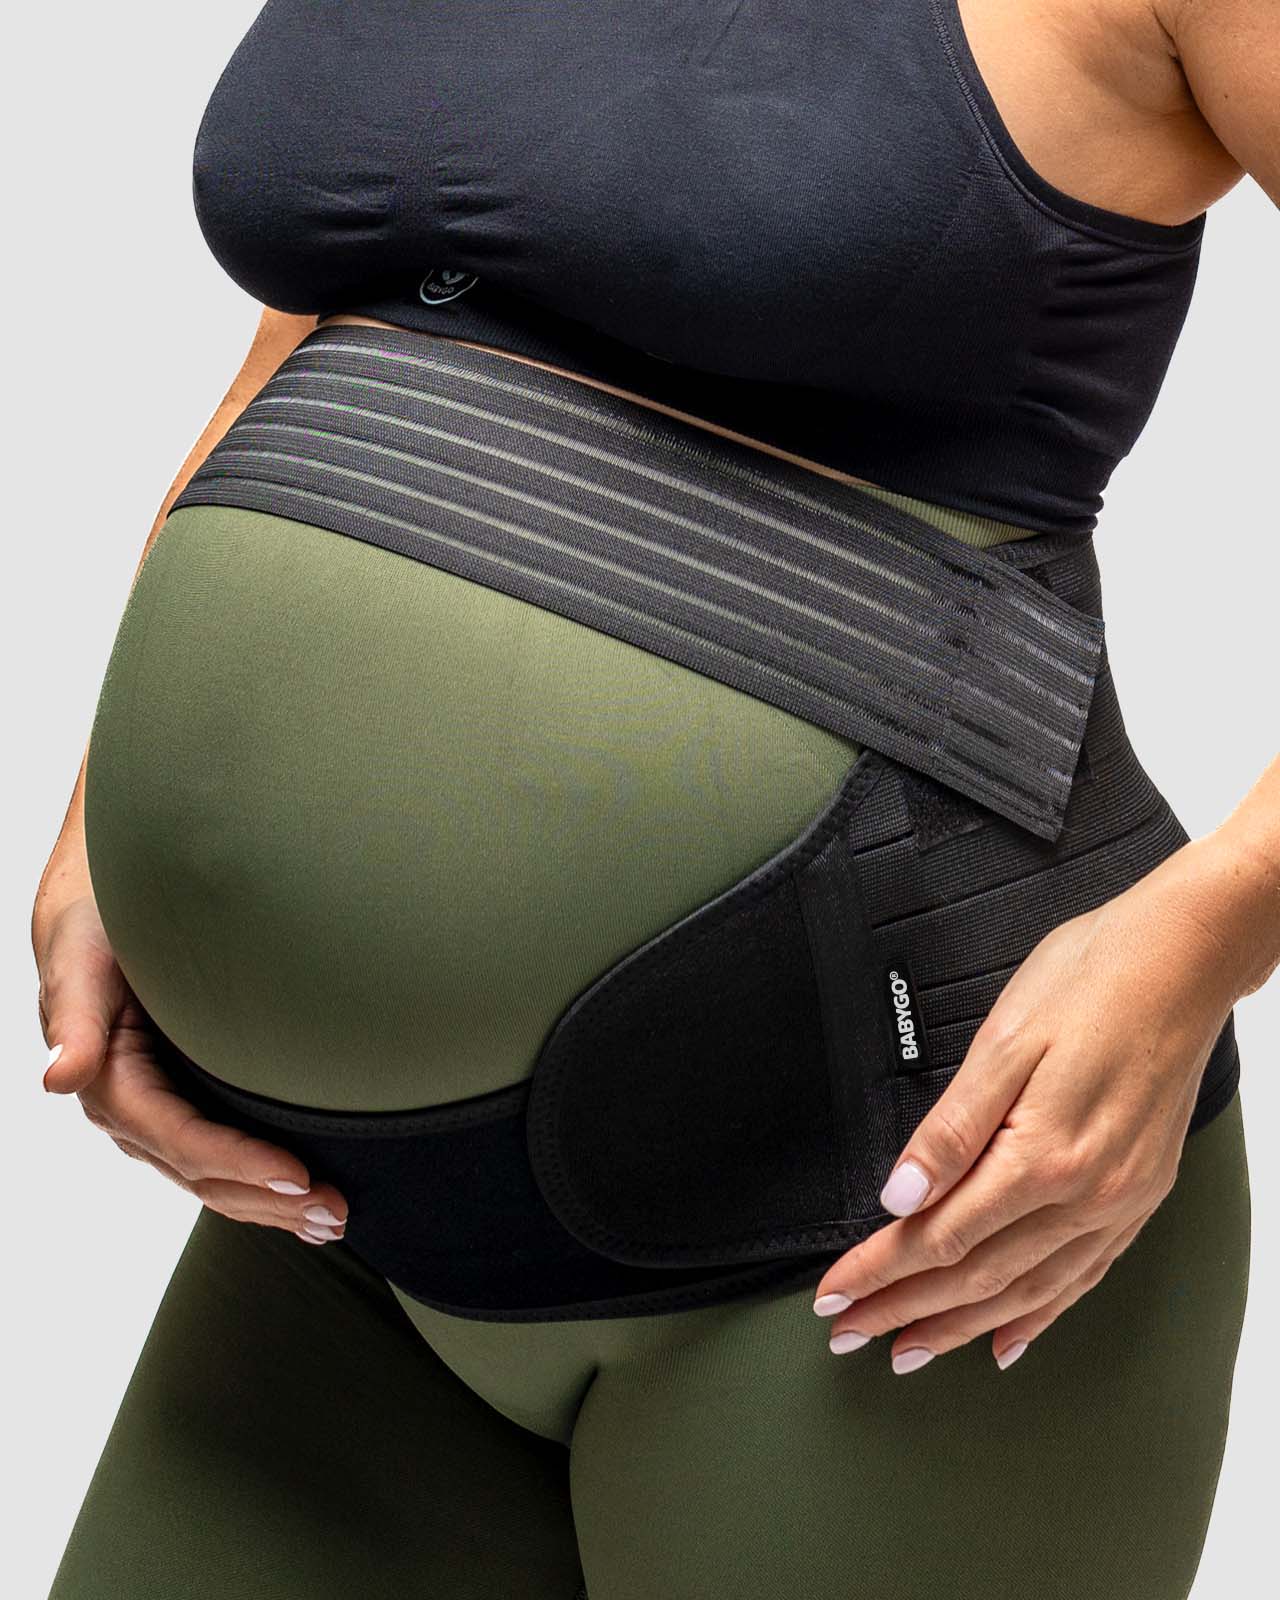 Cinturón de embarazo  Banda Espalda SPD de Soporte Pélvico para Maternidad  - BABYGO¨